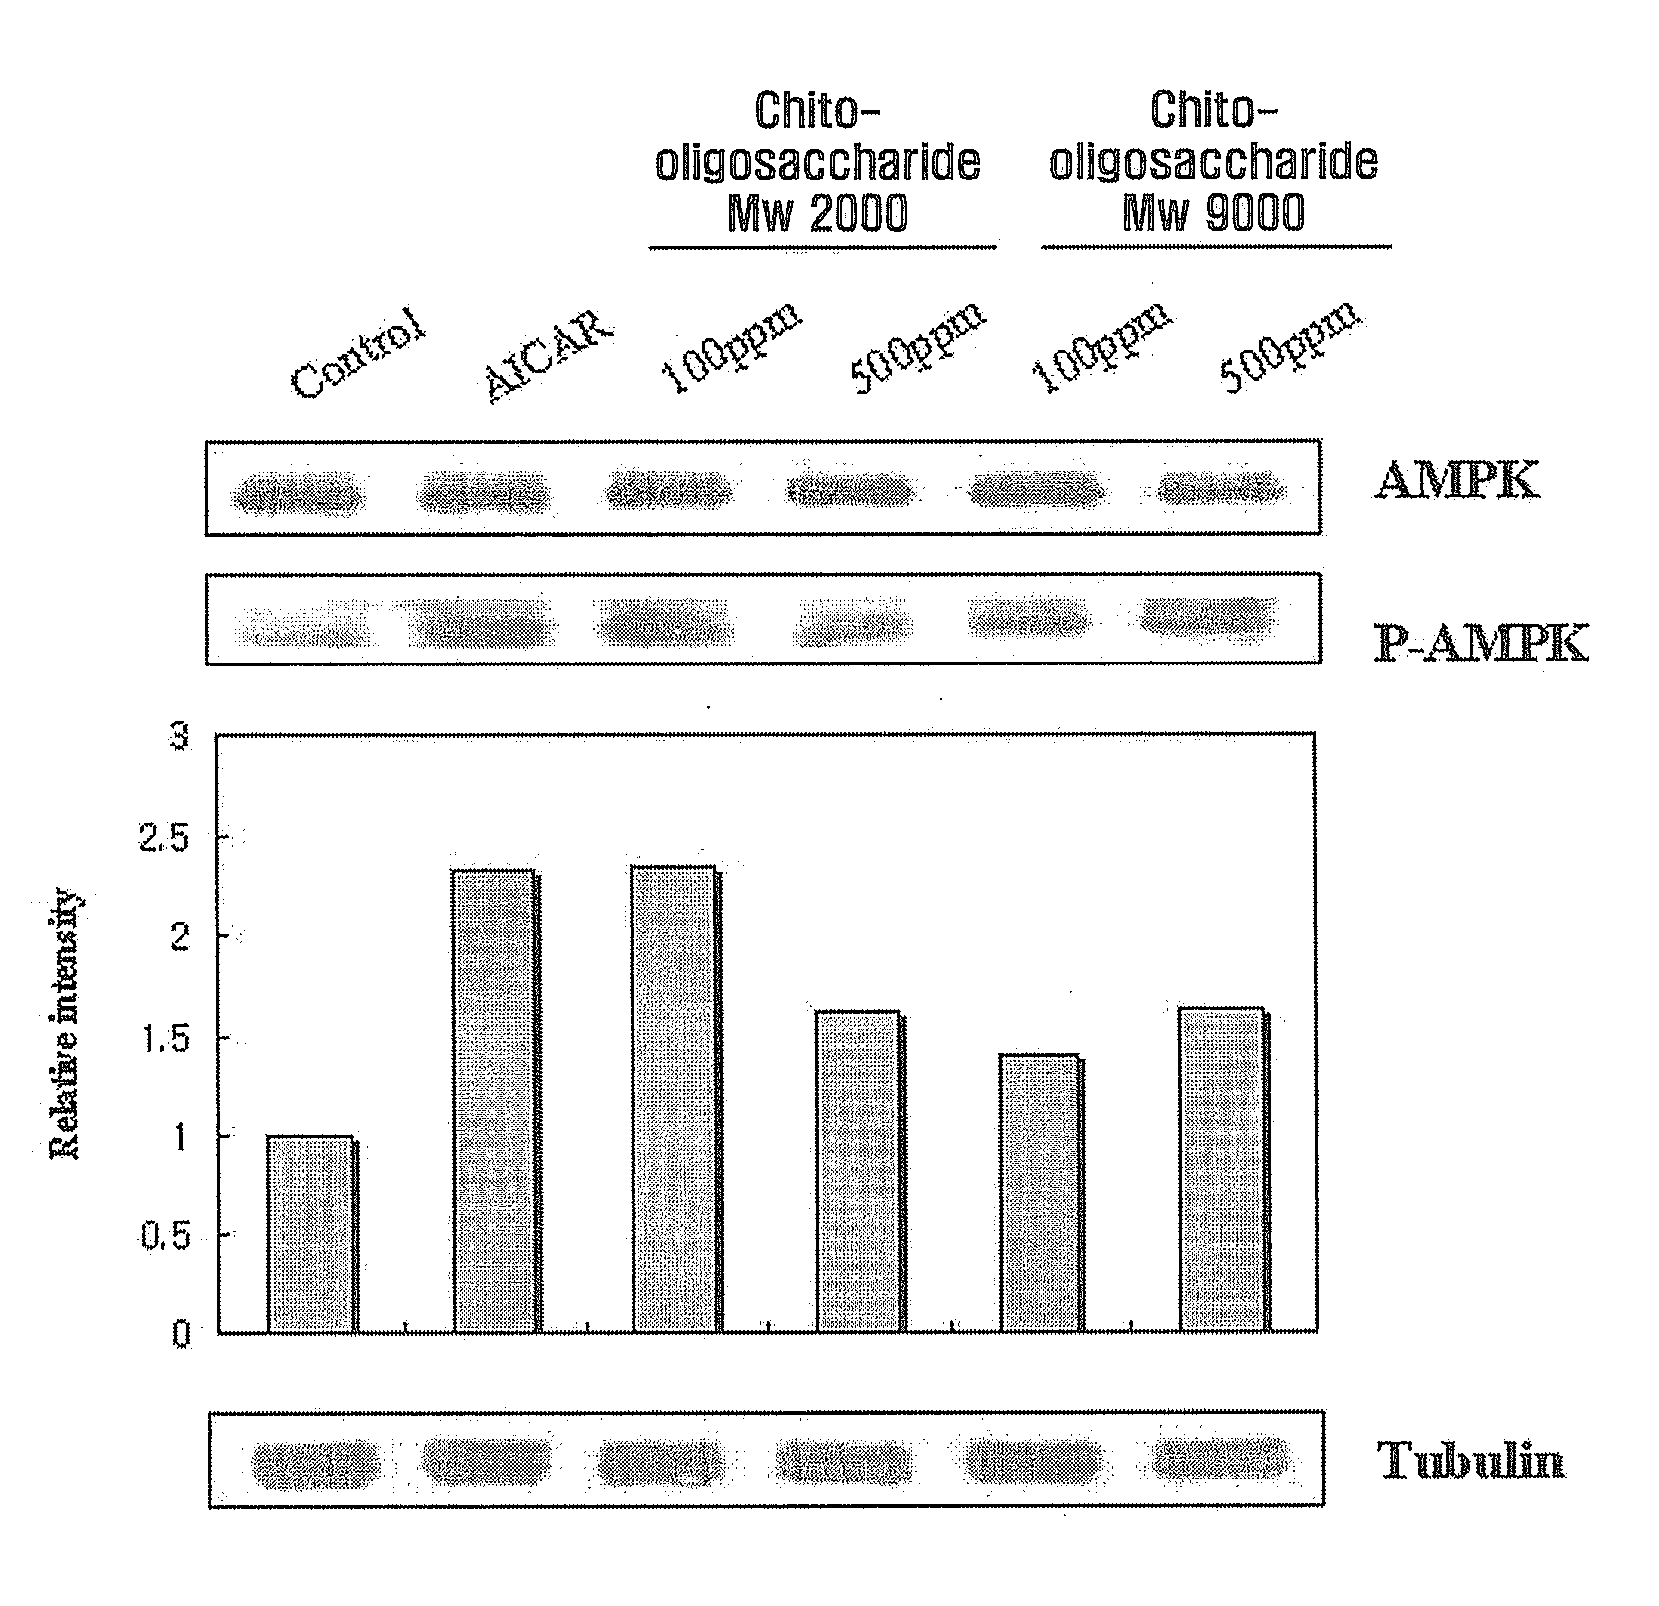 Ampk potentiator containing chito-oligosaccharide